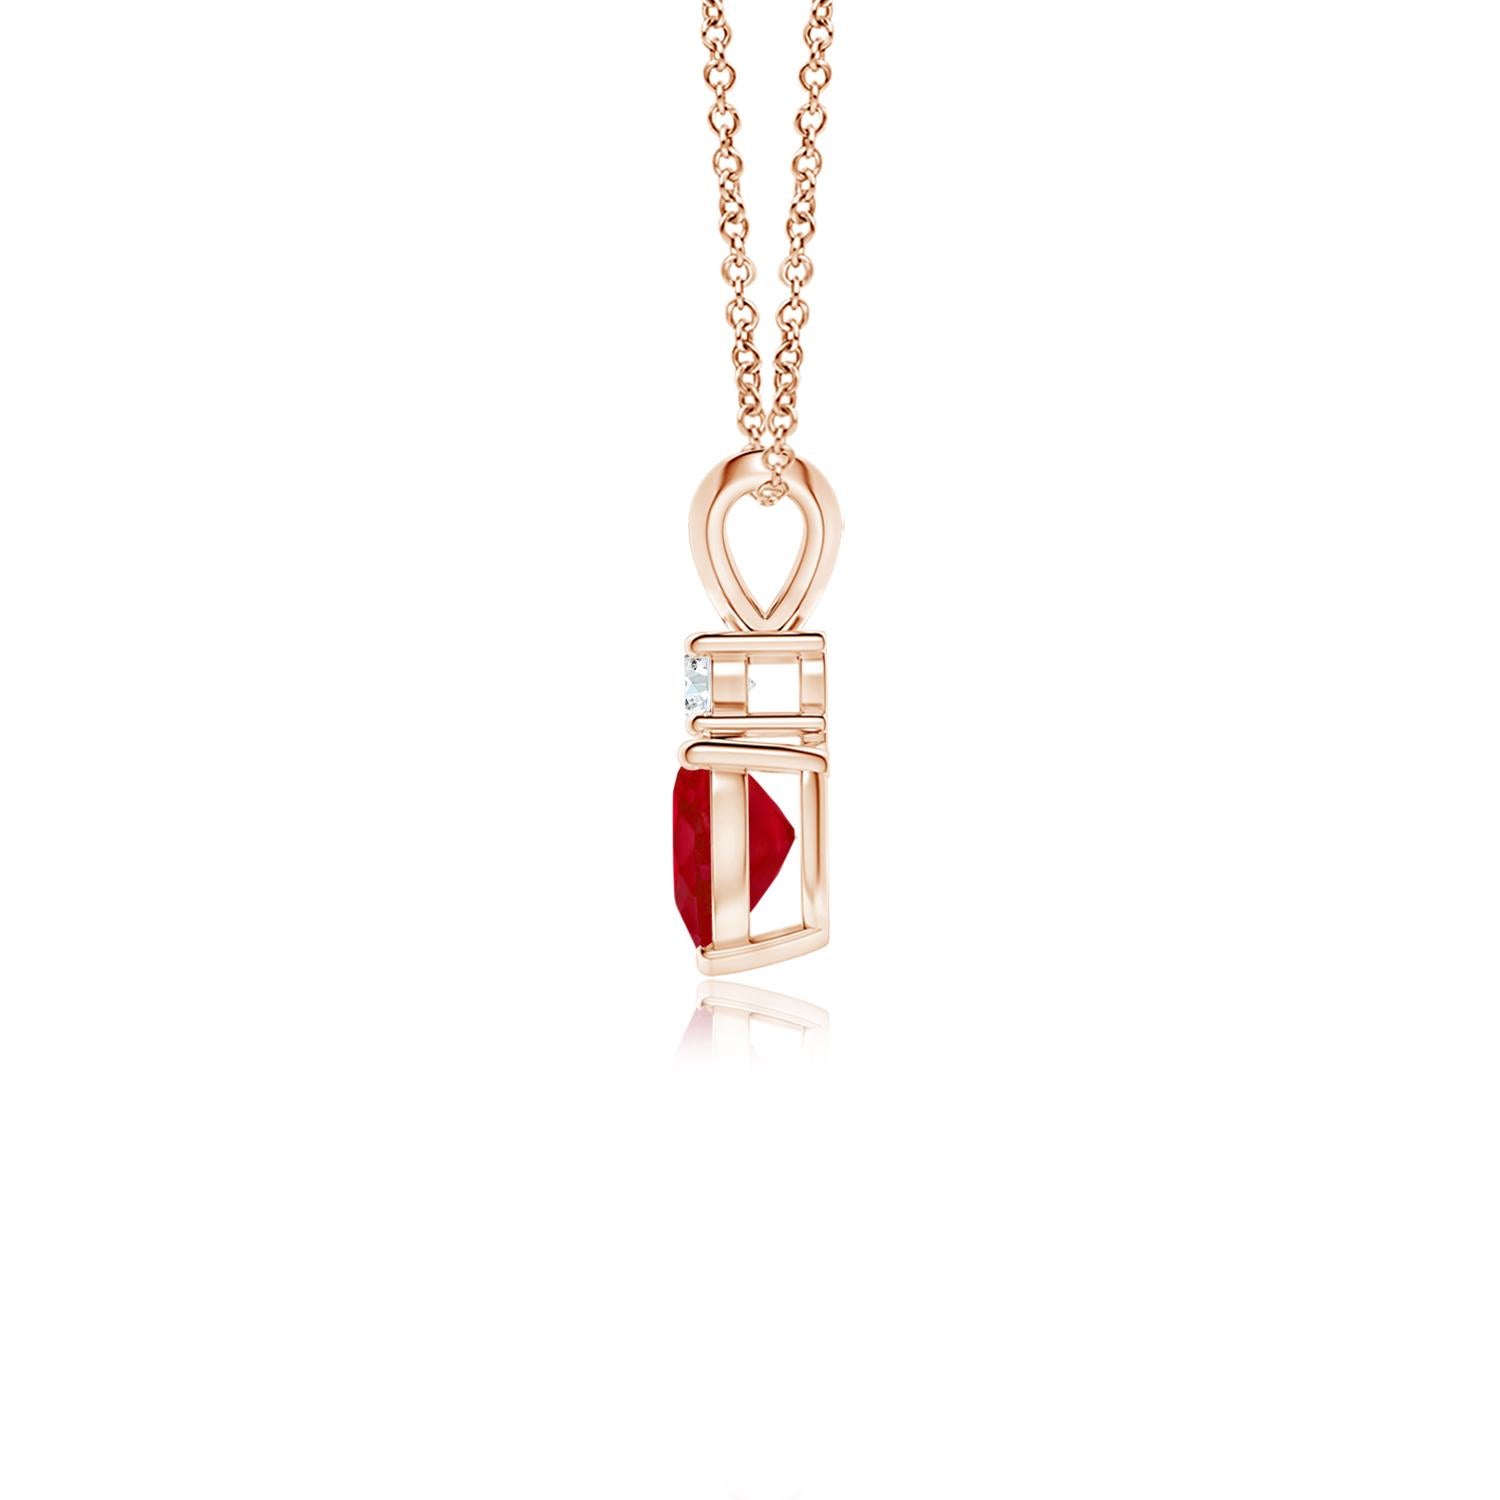 Dieser herzförmige Rubin-Anhänger aus 14-karätigem Roségold ist ein wunderschönes Symbol der Liebe. Der kühne rote Edelstein wird von einem glitzernden runden Diamanten gekrönt und ist mit einem Kaninchenohrbündel verbunden.
Der Rubin ist der